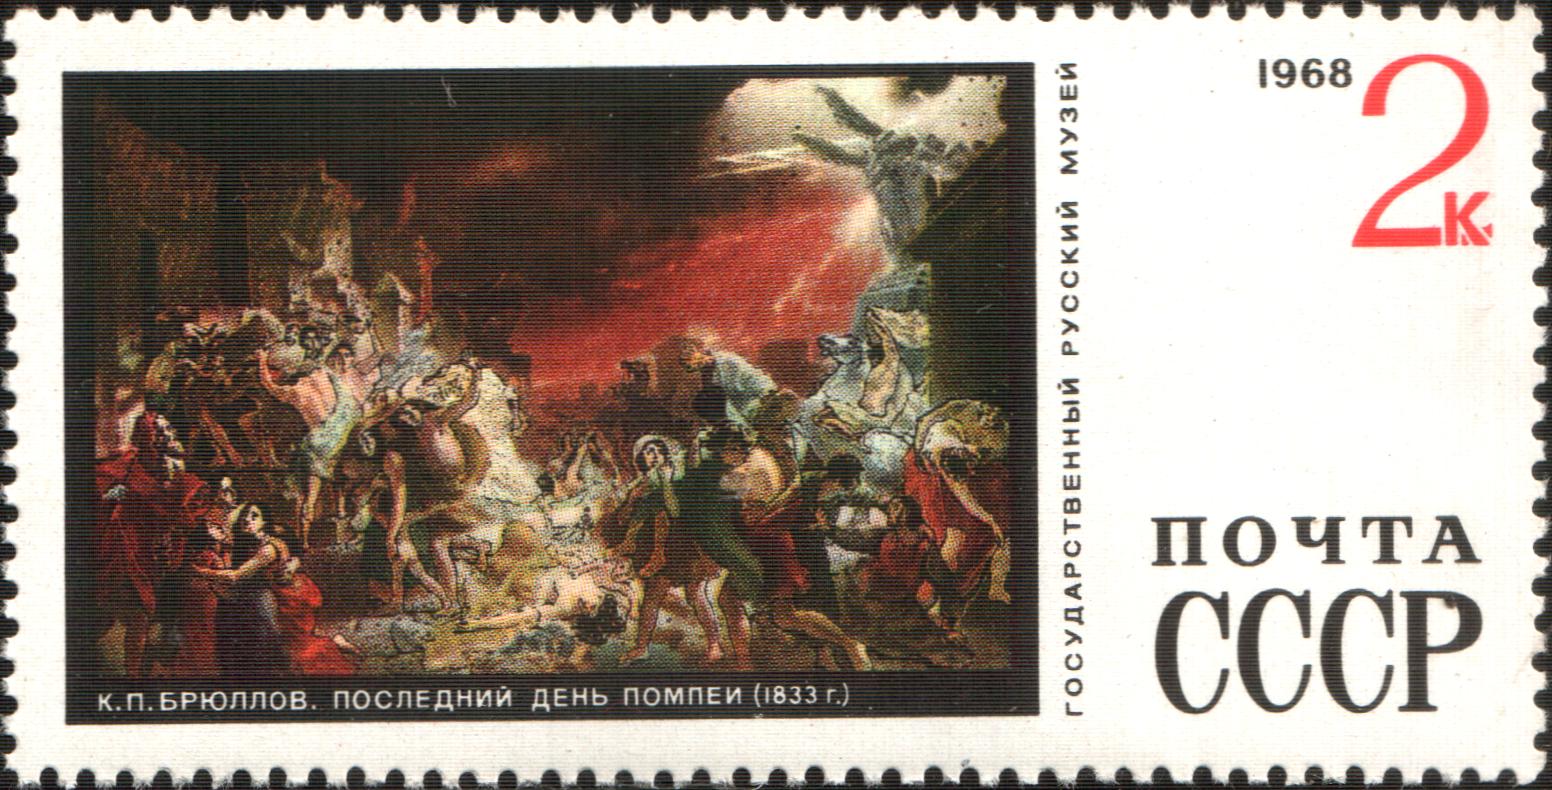 Почтовая марка с картиной Брюллова